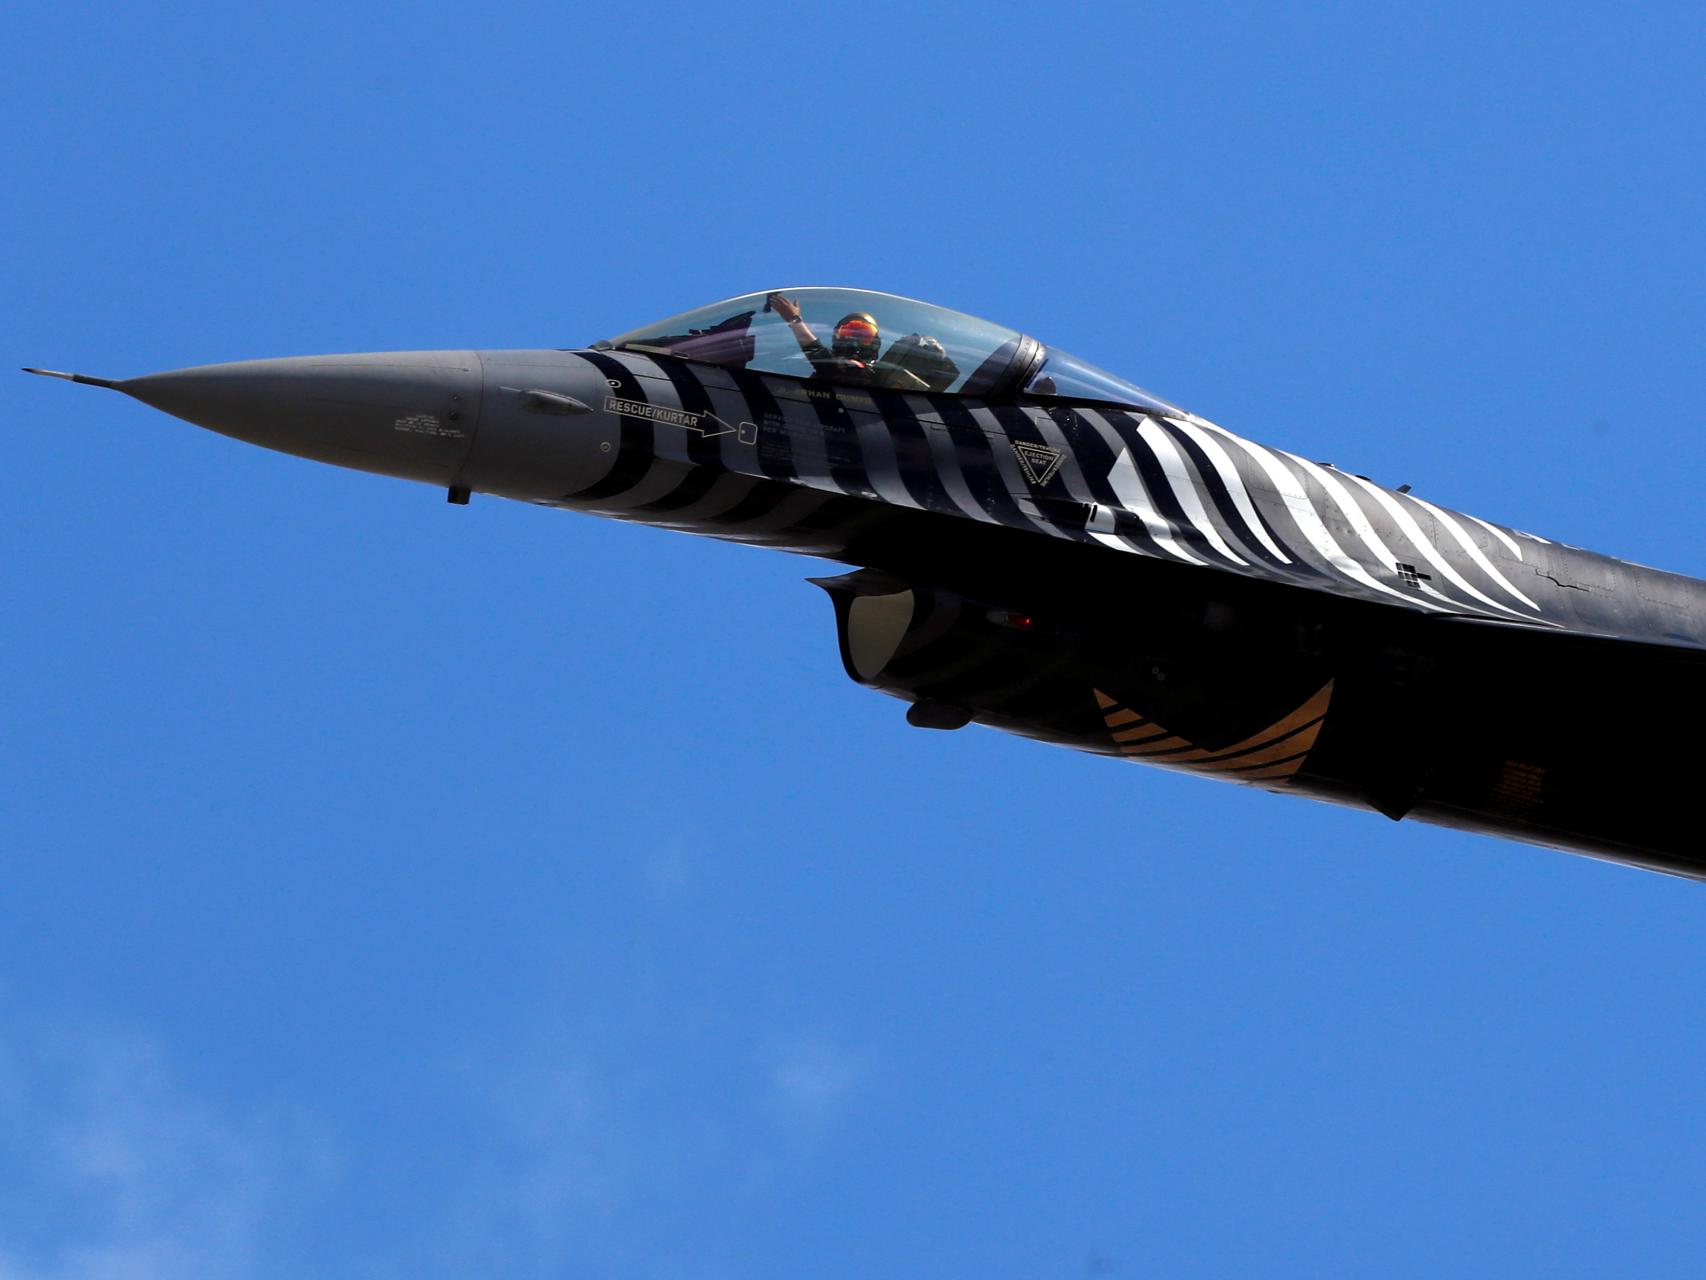 Un ensayo de vuelo del F-16, el modelo ambicionado por Turquía.